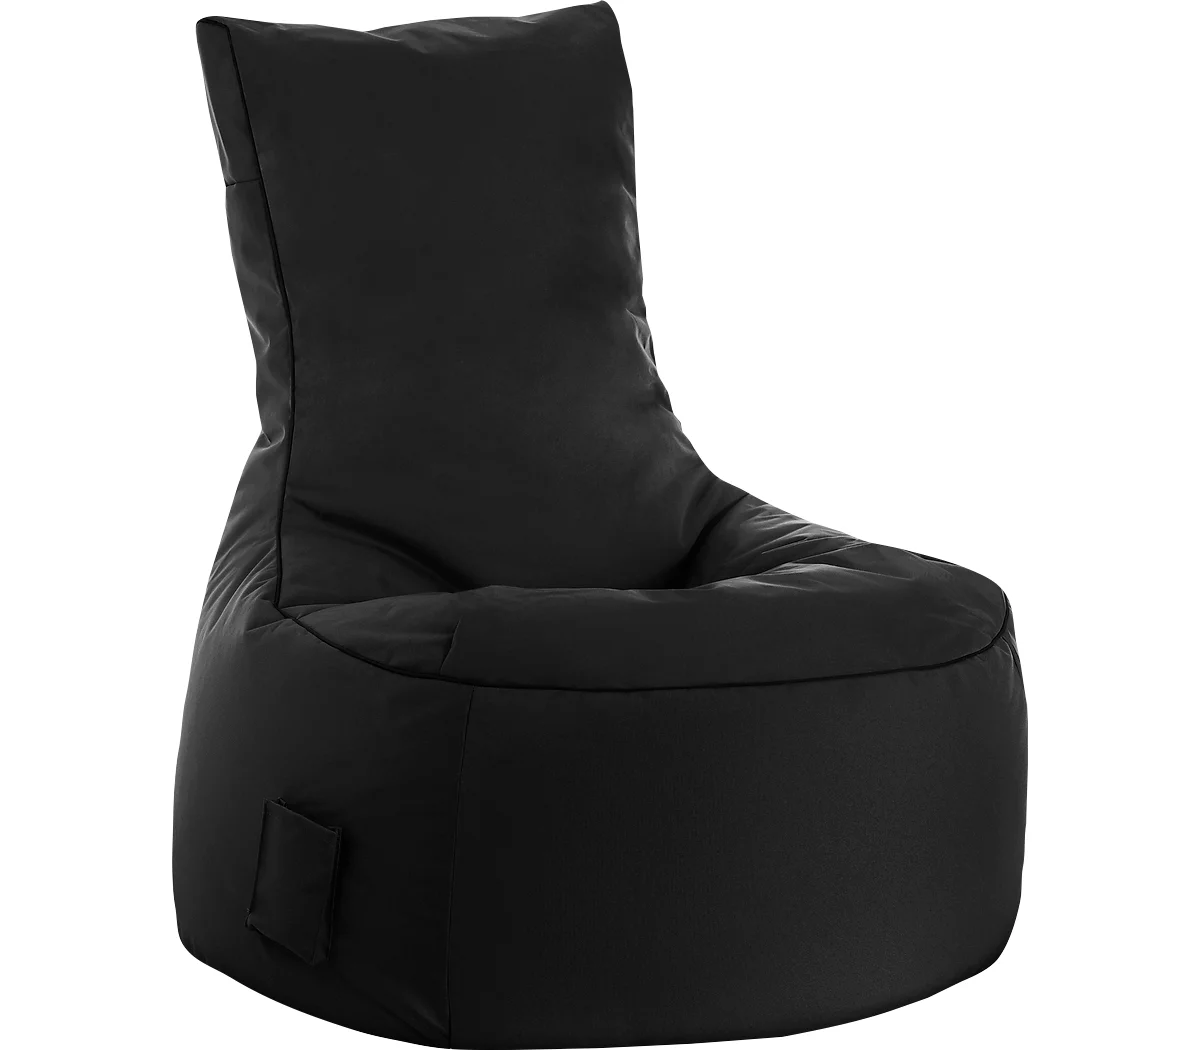 Sitzsack swing scuba®, 100% Polyester, abwaschbar, B 650 x T 900 x H 950 mm, schwarz